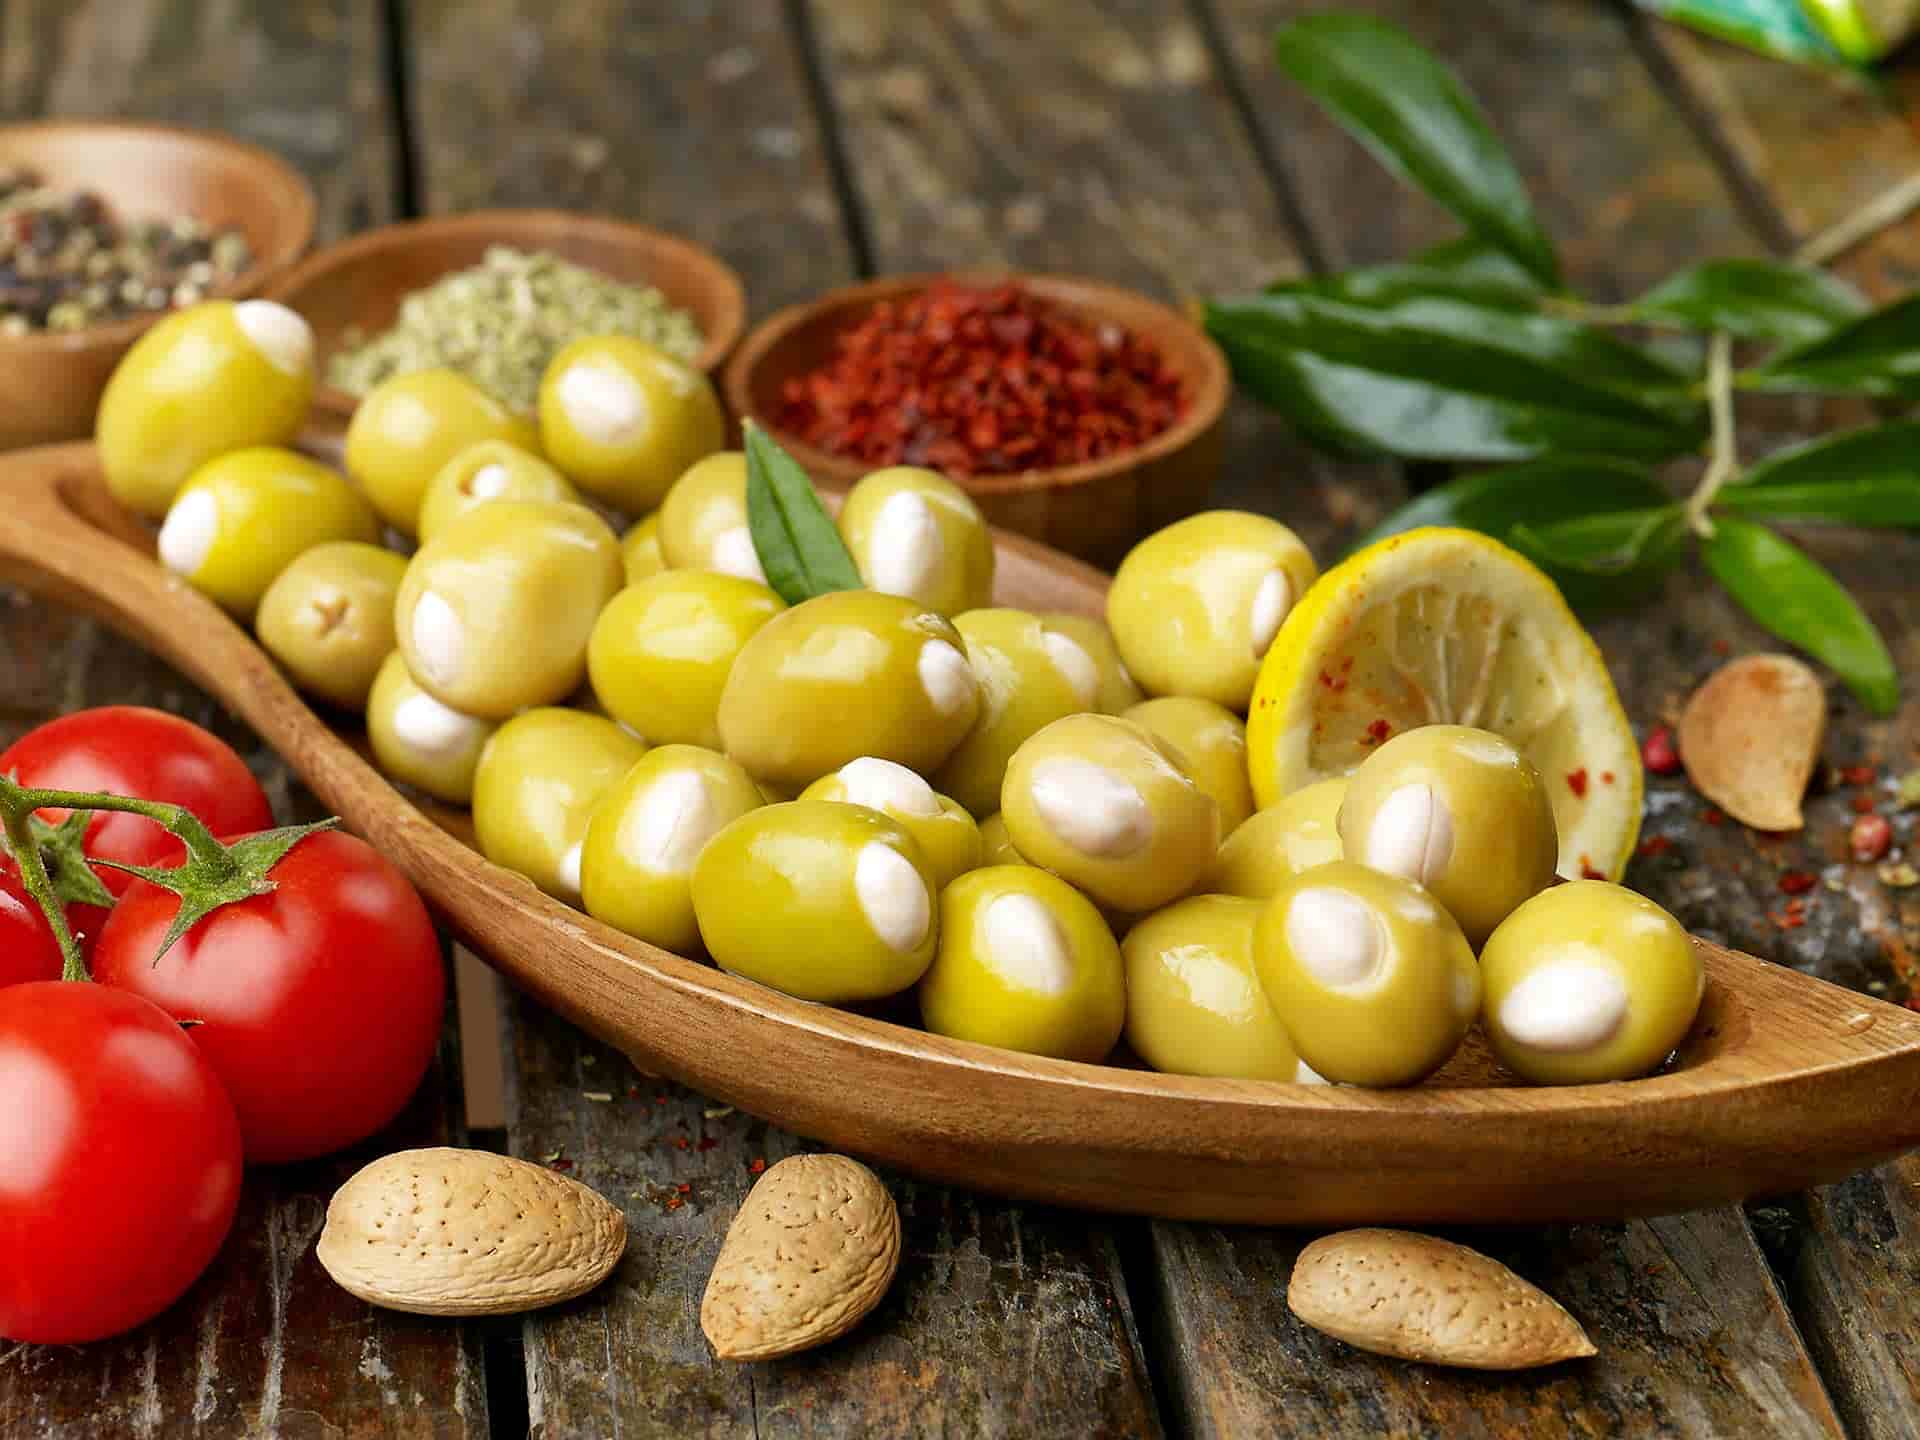 الزيتون الاخضر التفاحى؛ لونه اخضر سعرات حرارية منخفضة يقوي العظام olive